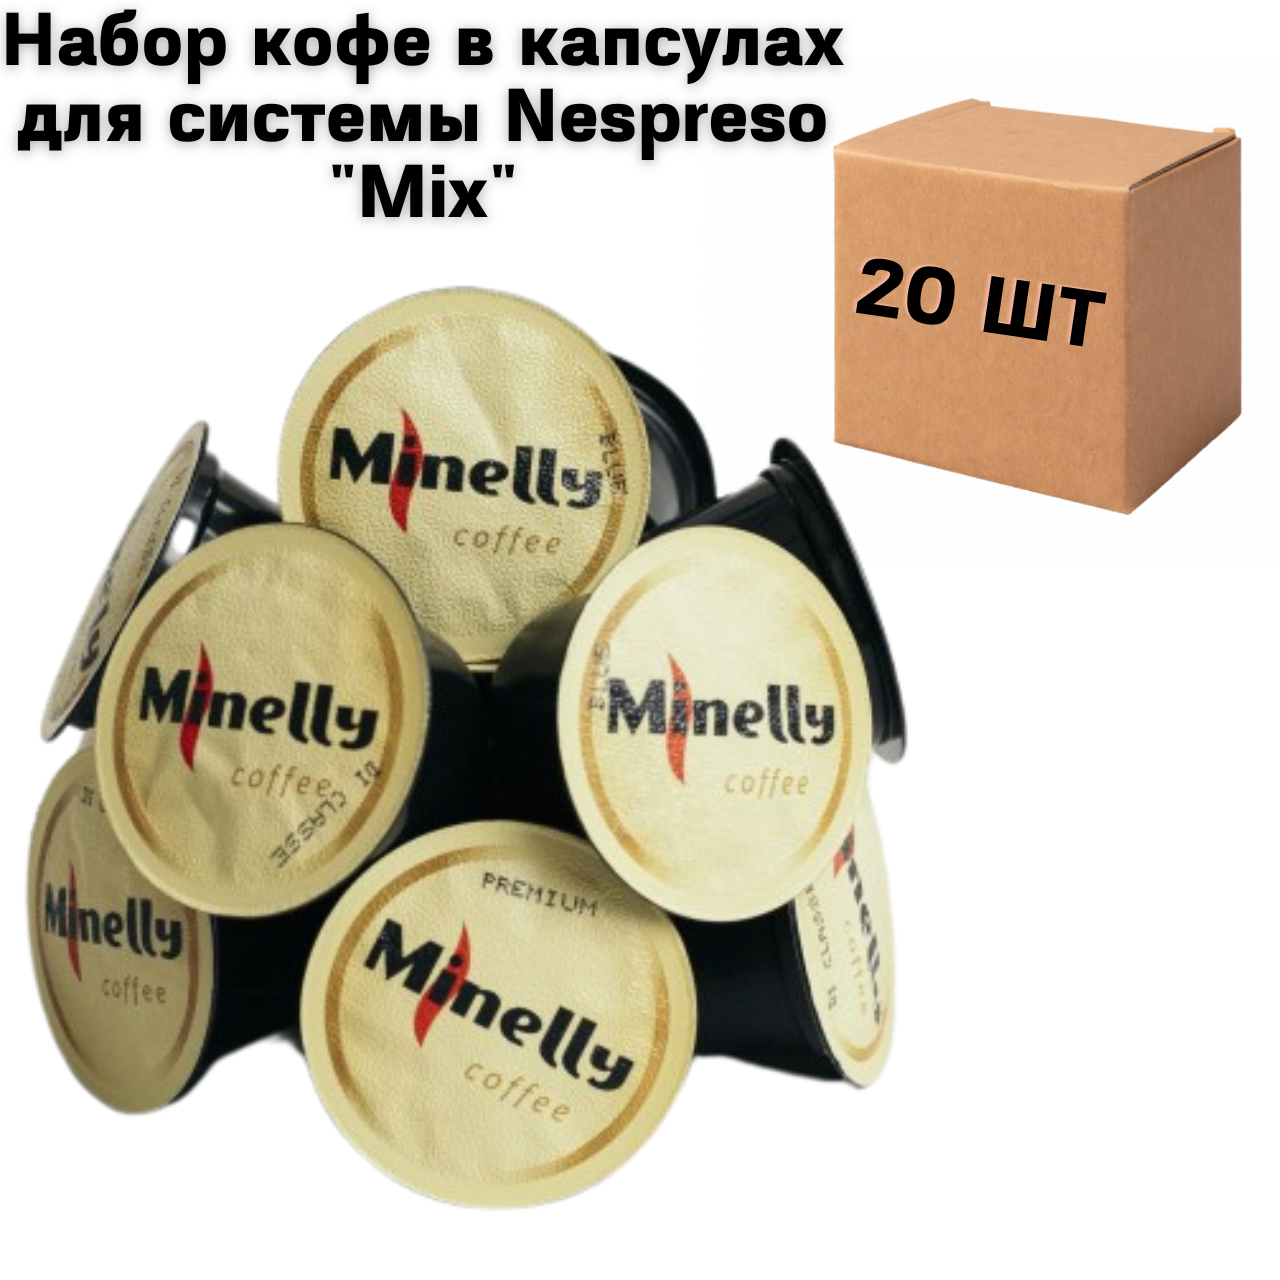 Набор кофе в капсулах для системы Nespreso "Mix" - 20 шт.